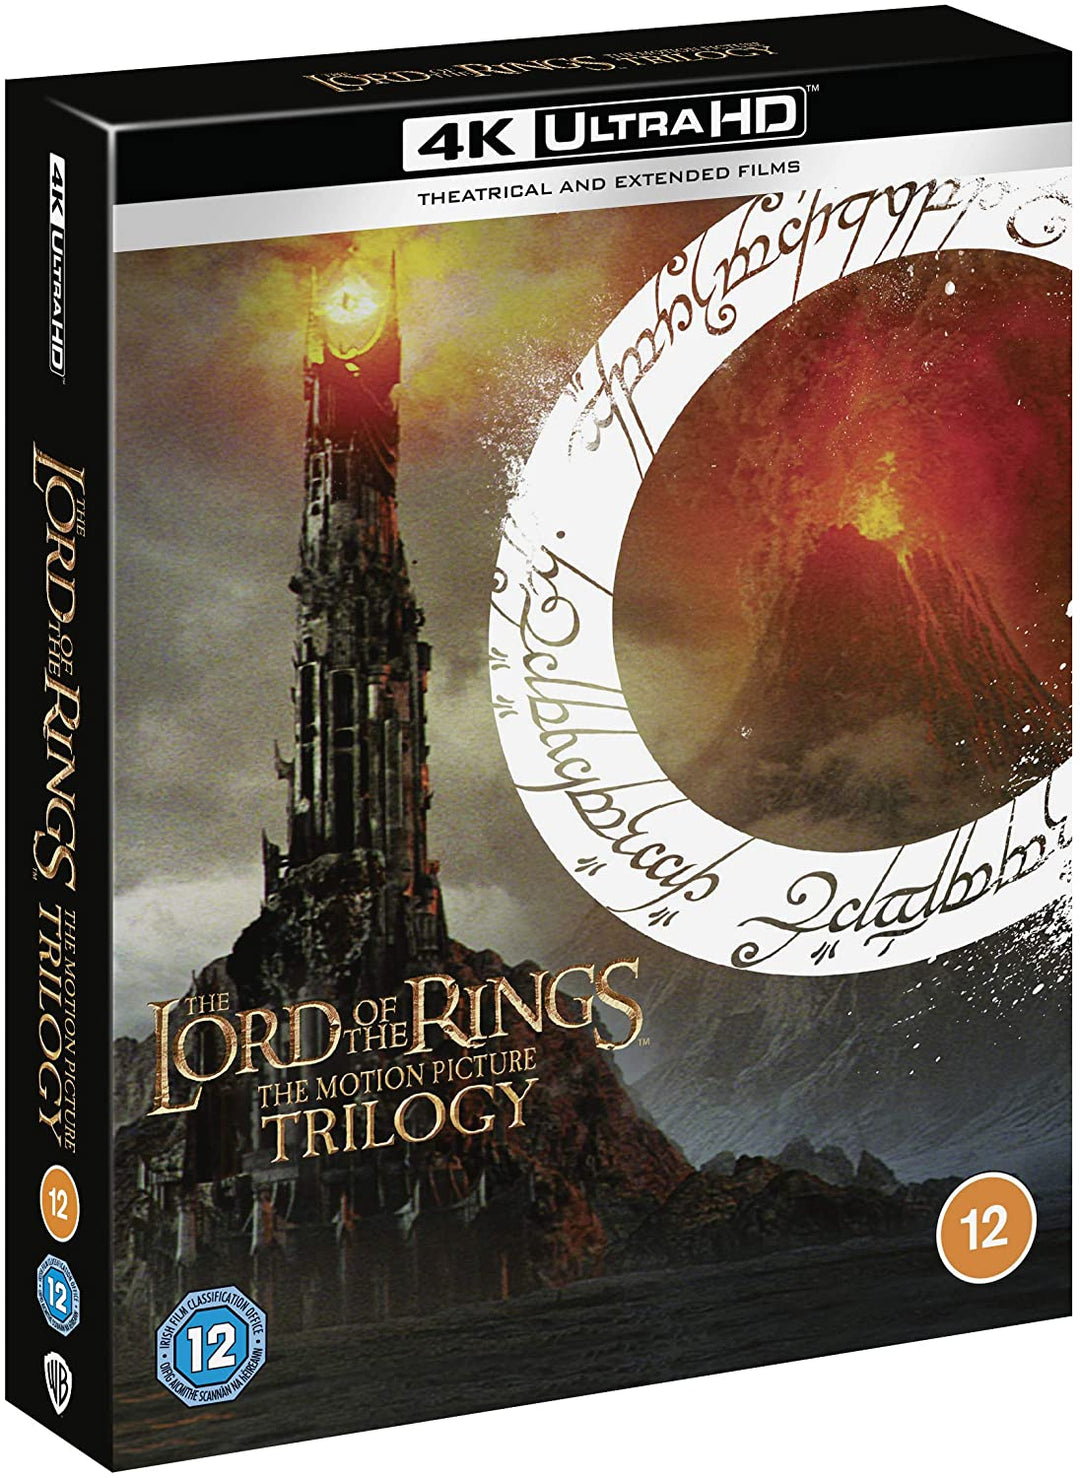 Die Herr der Ringe-Trilogie: [Kino und [4K Ultra HD] [2001] [Region Free] – Fantasy/Abenteuer [Blu-ray]